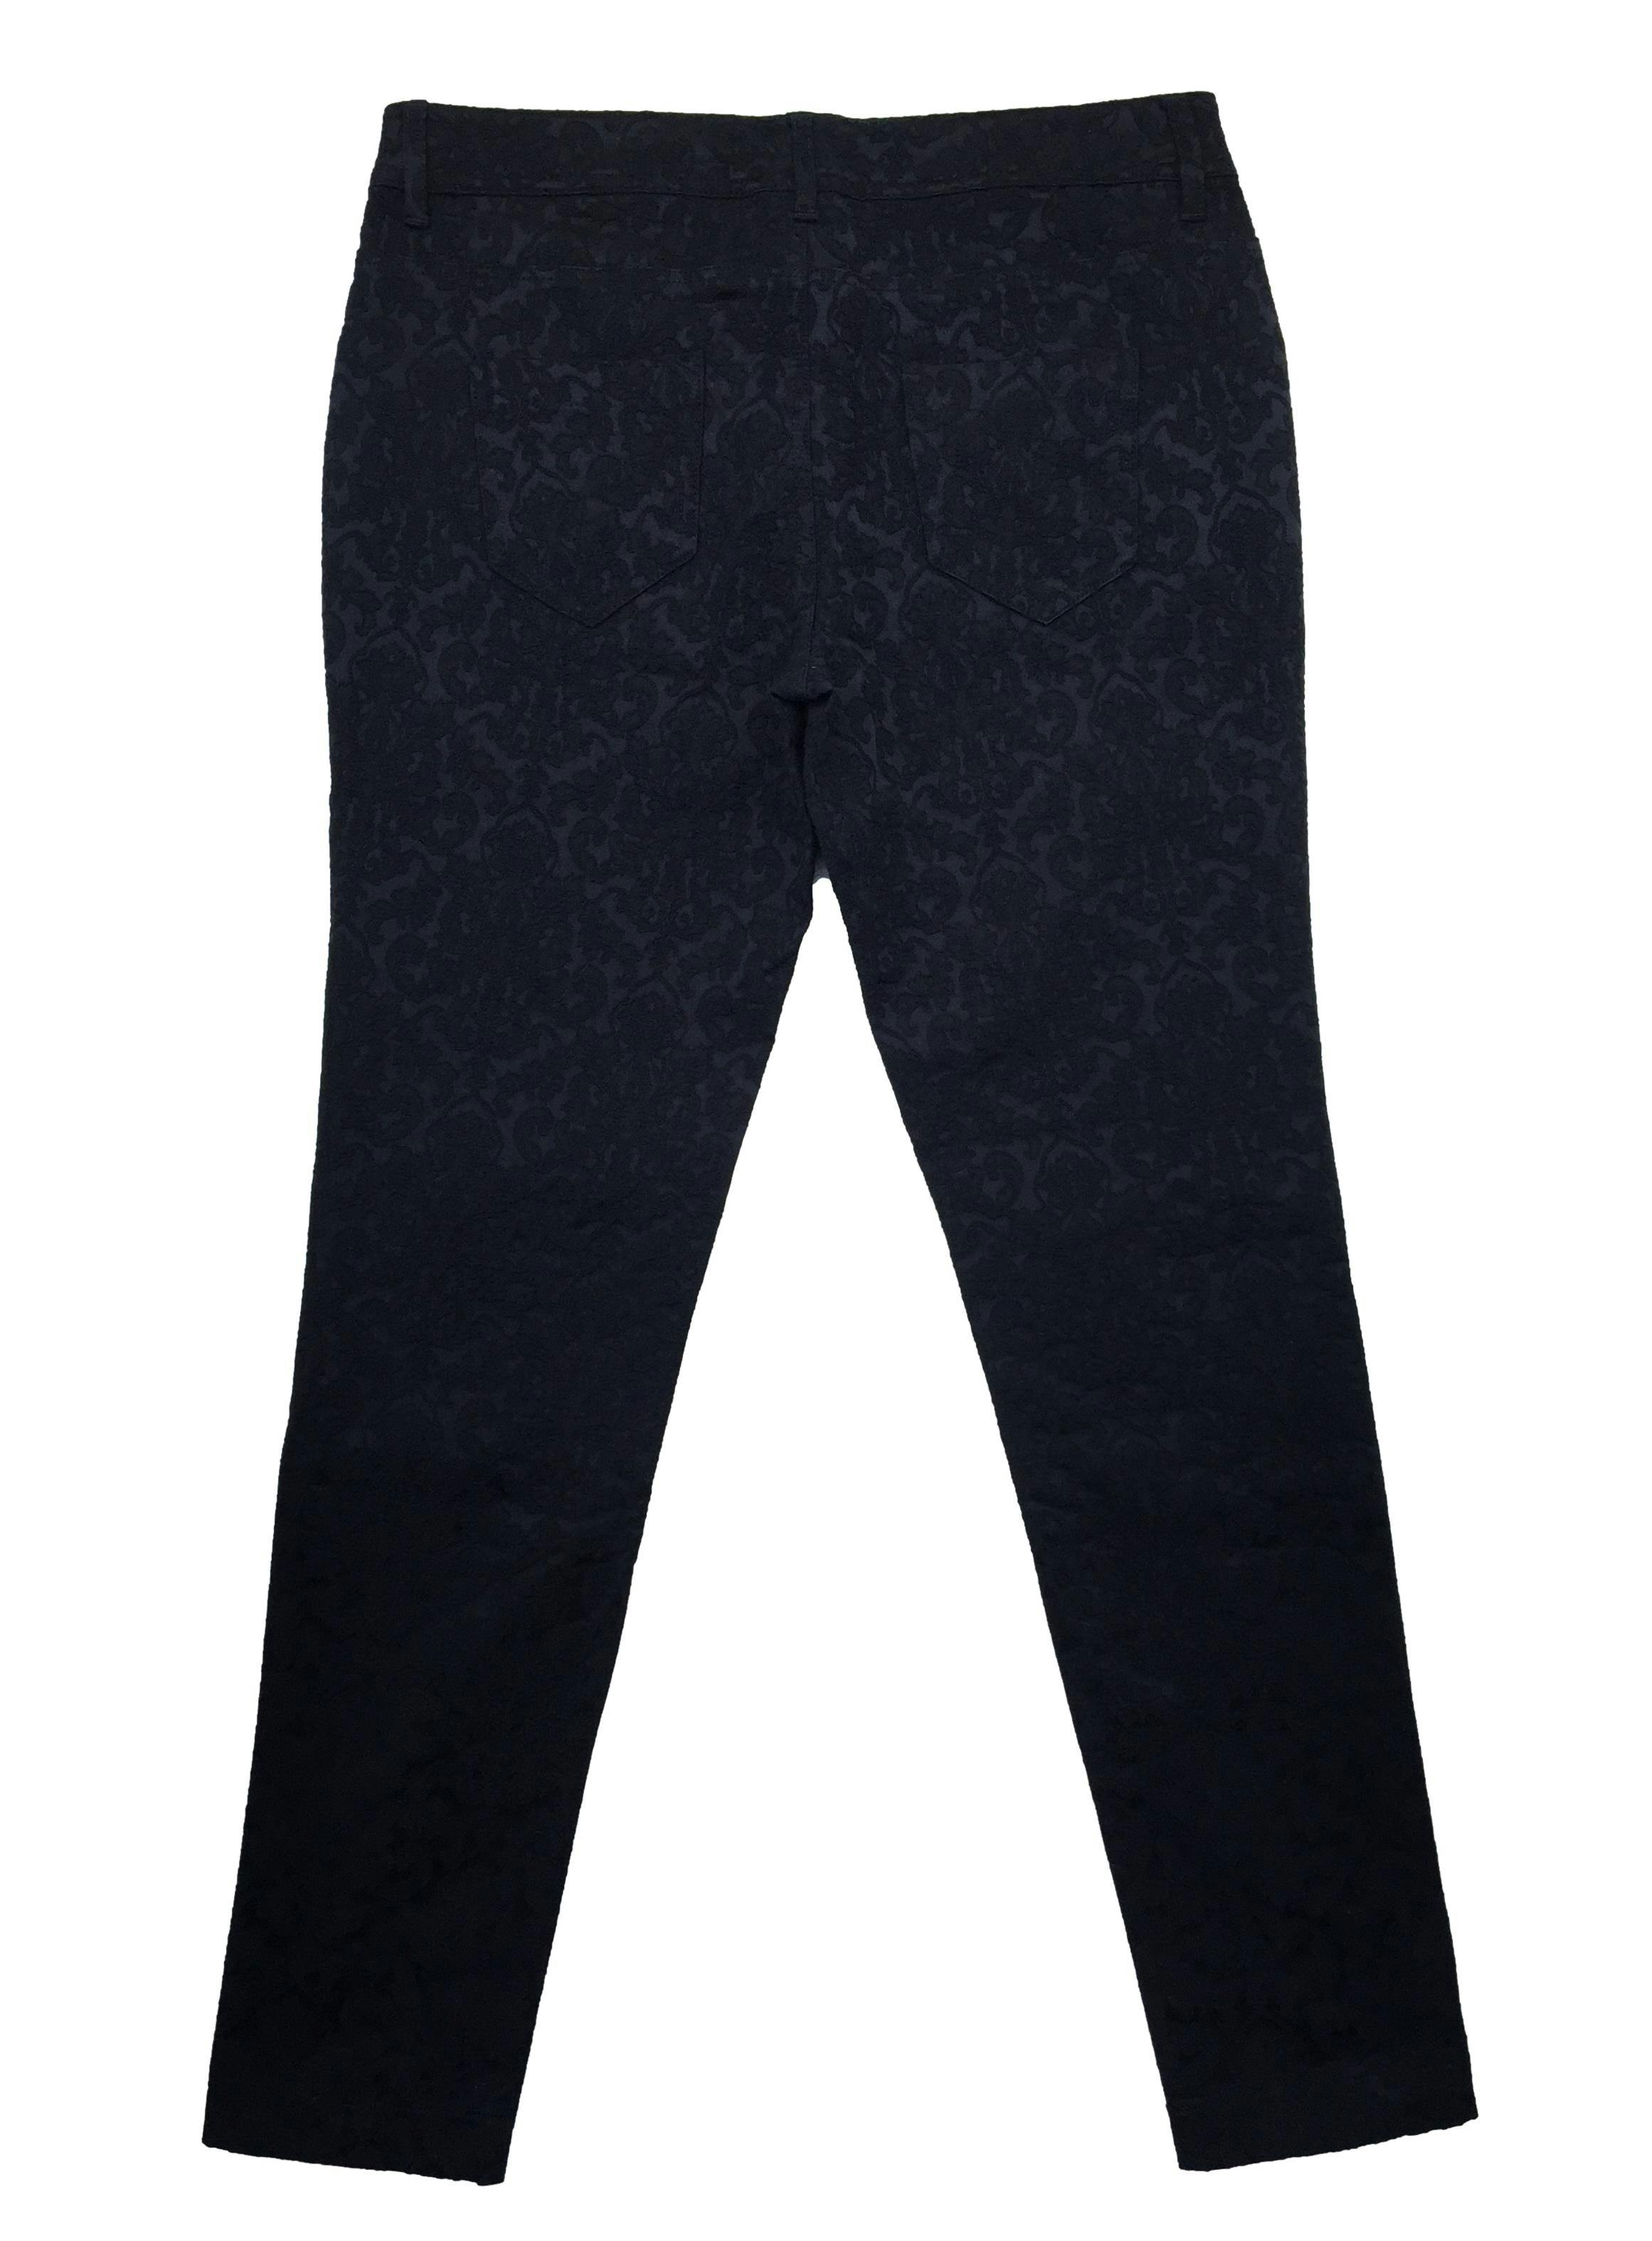 Pantalon negro bordado flores en relieve, ligeramente stretch. Cintura 78cm Tiro 21cm Largo 90cm